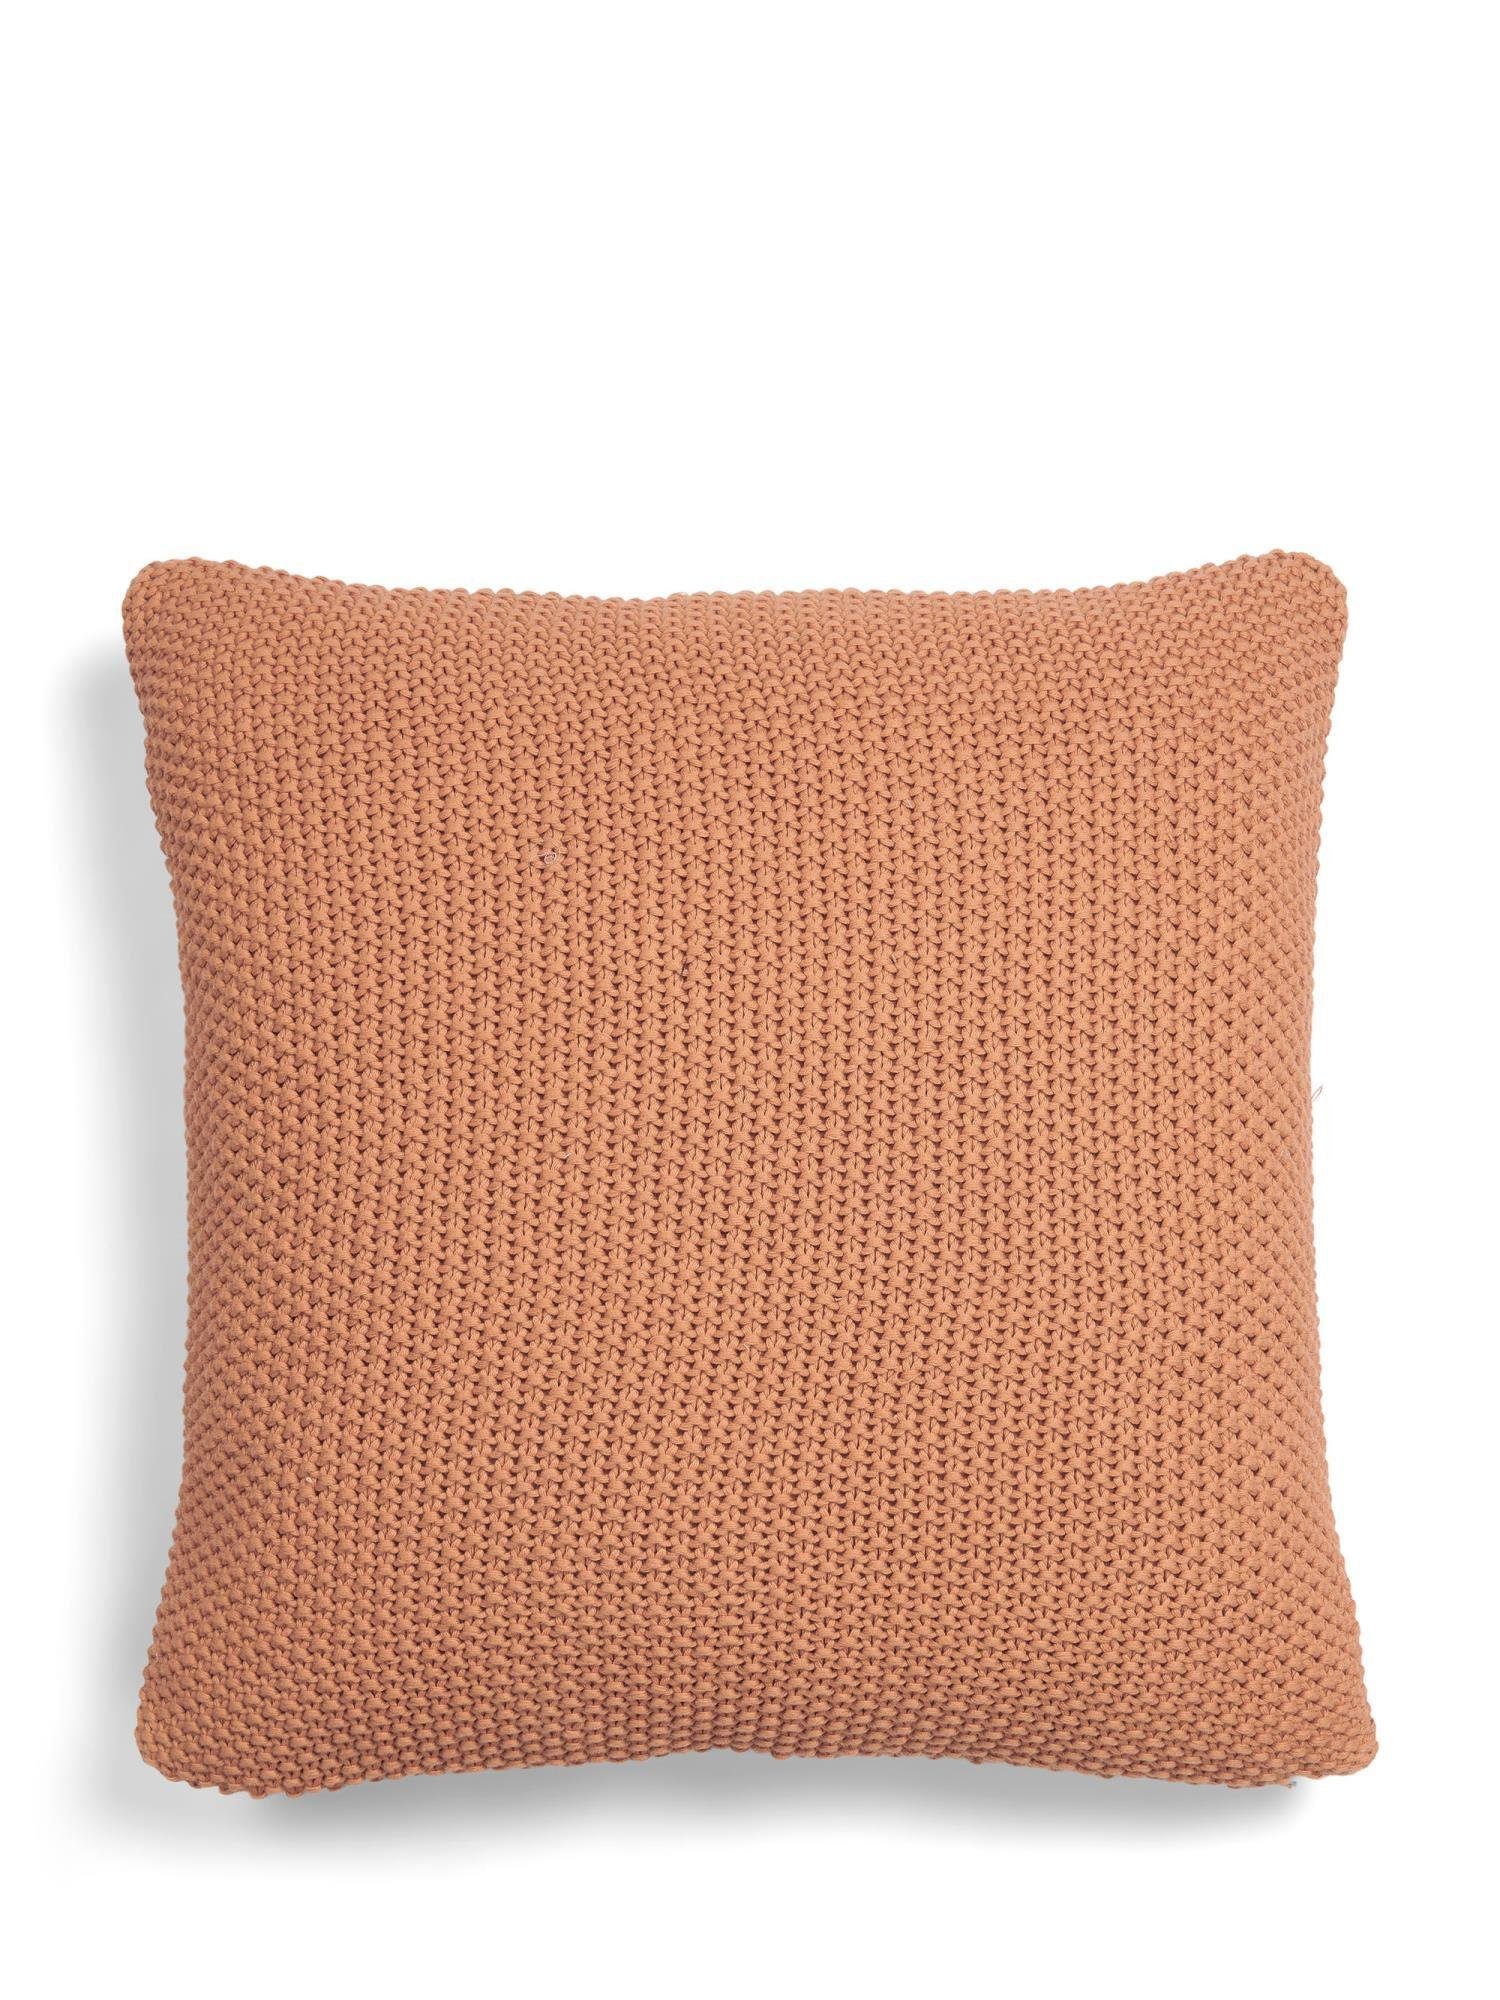 Marc O'Polo Home Dekokissen Nordic knit, aus gestrickter nachhaltiger Baumwolle Sandstone